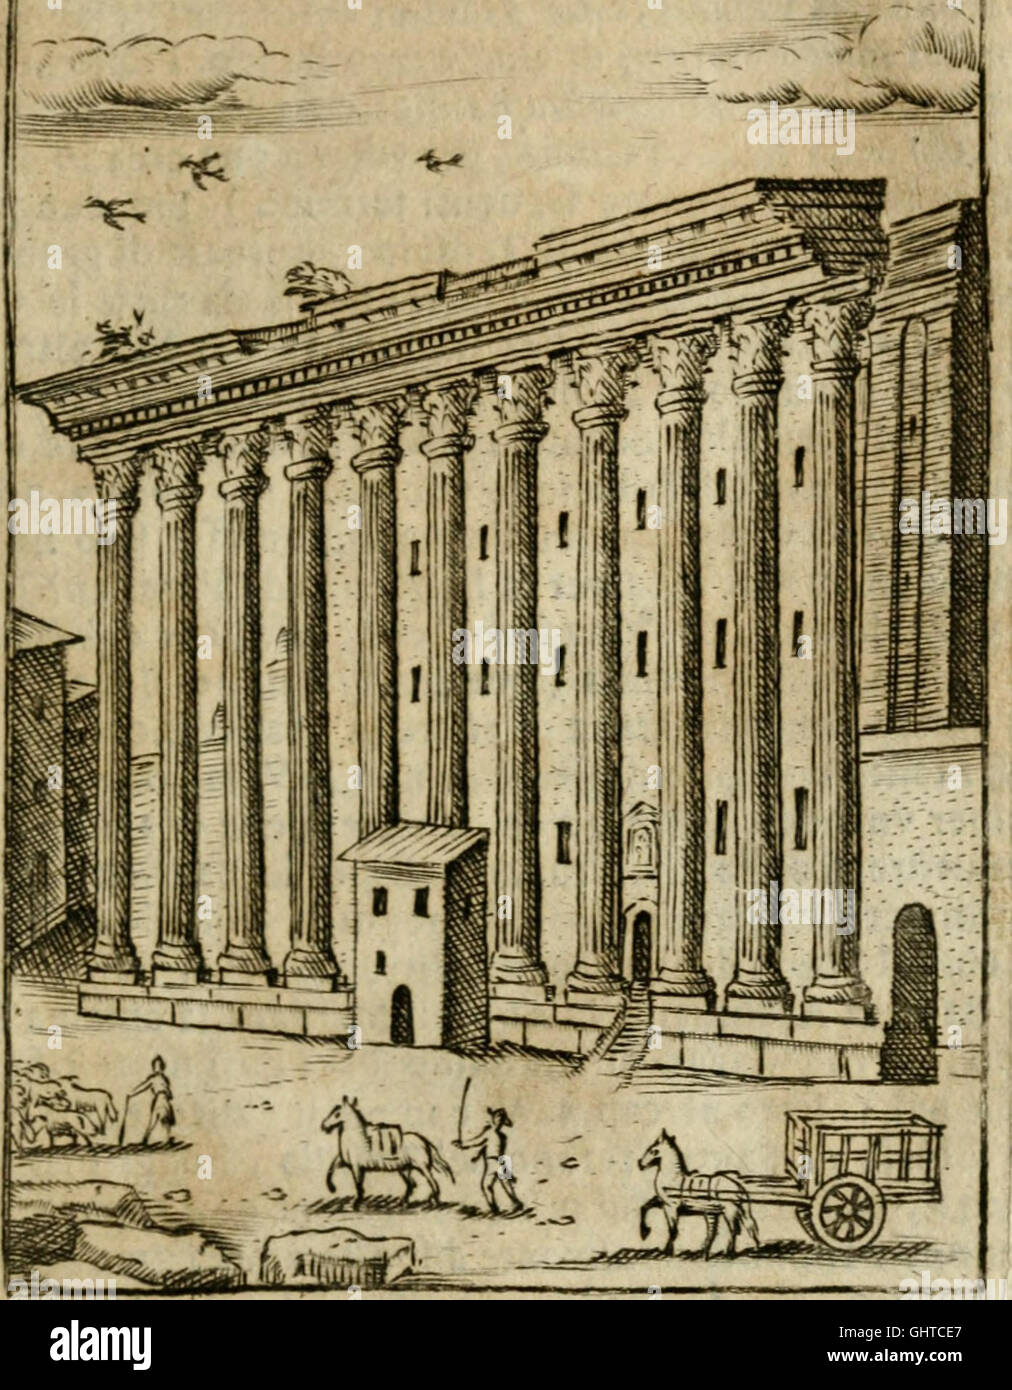 Ritratto di Roma antica - nel qvale sono figvrati i principali tempij, theatri, anfiteatri, cerchi, naumachie, archi trionfali, curie, basiliche, colonne, ordine del trionfo, dignita militari, e Foto Stock